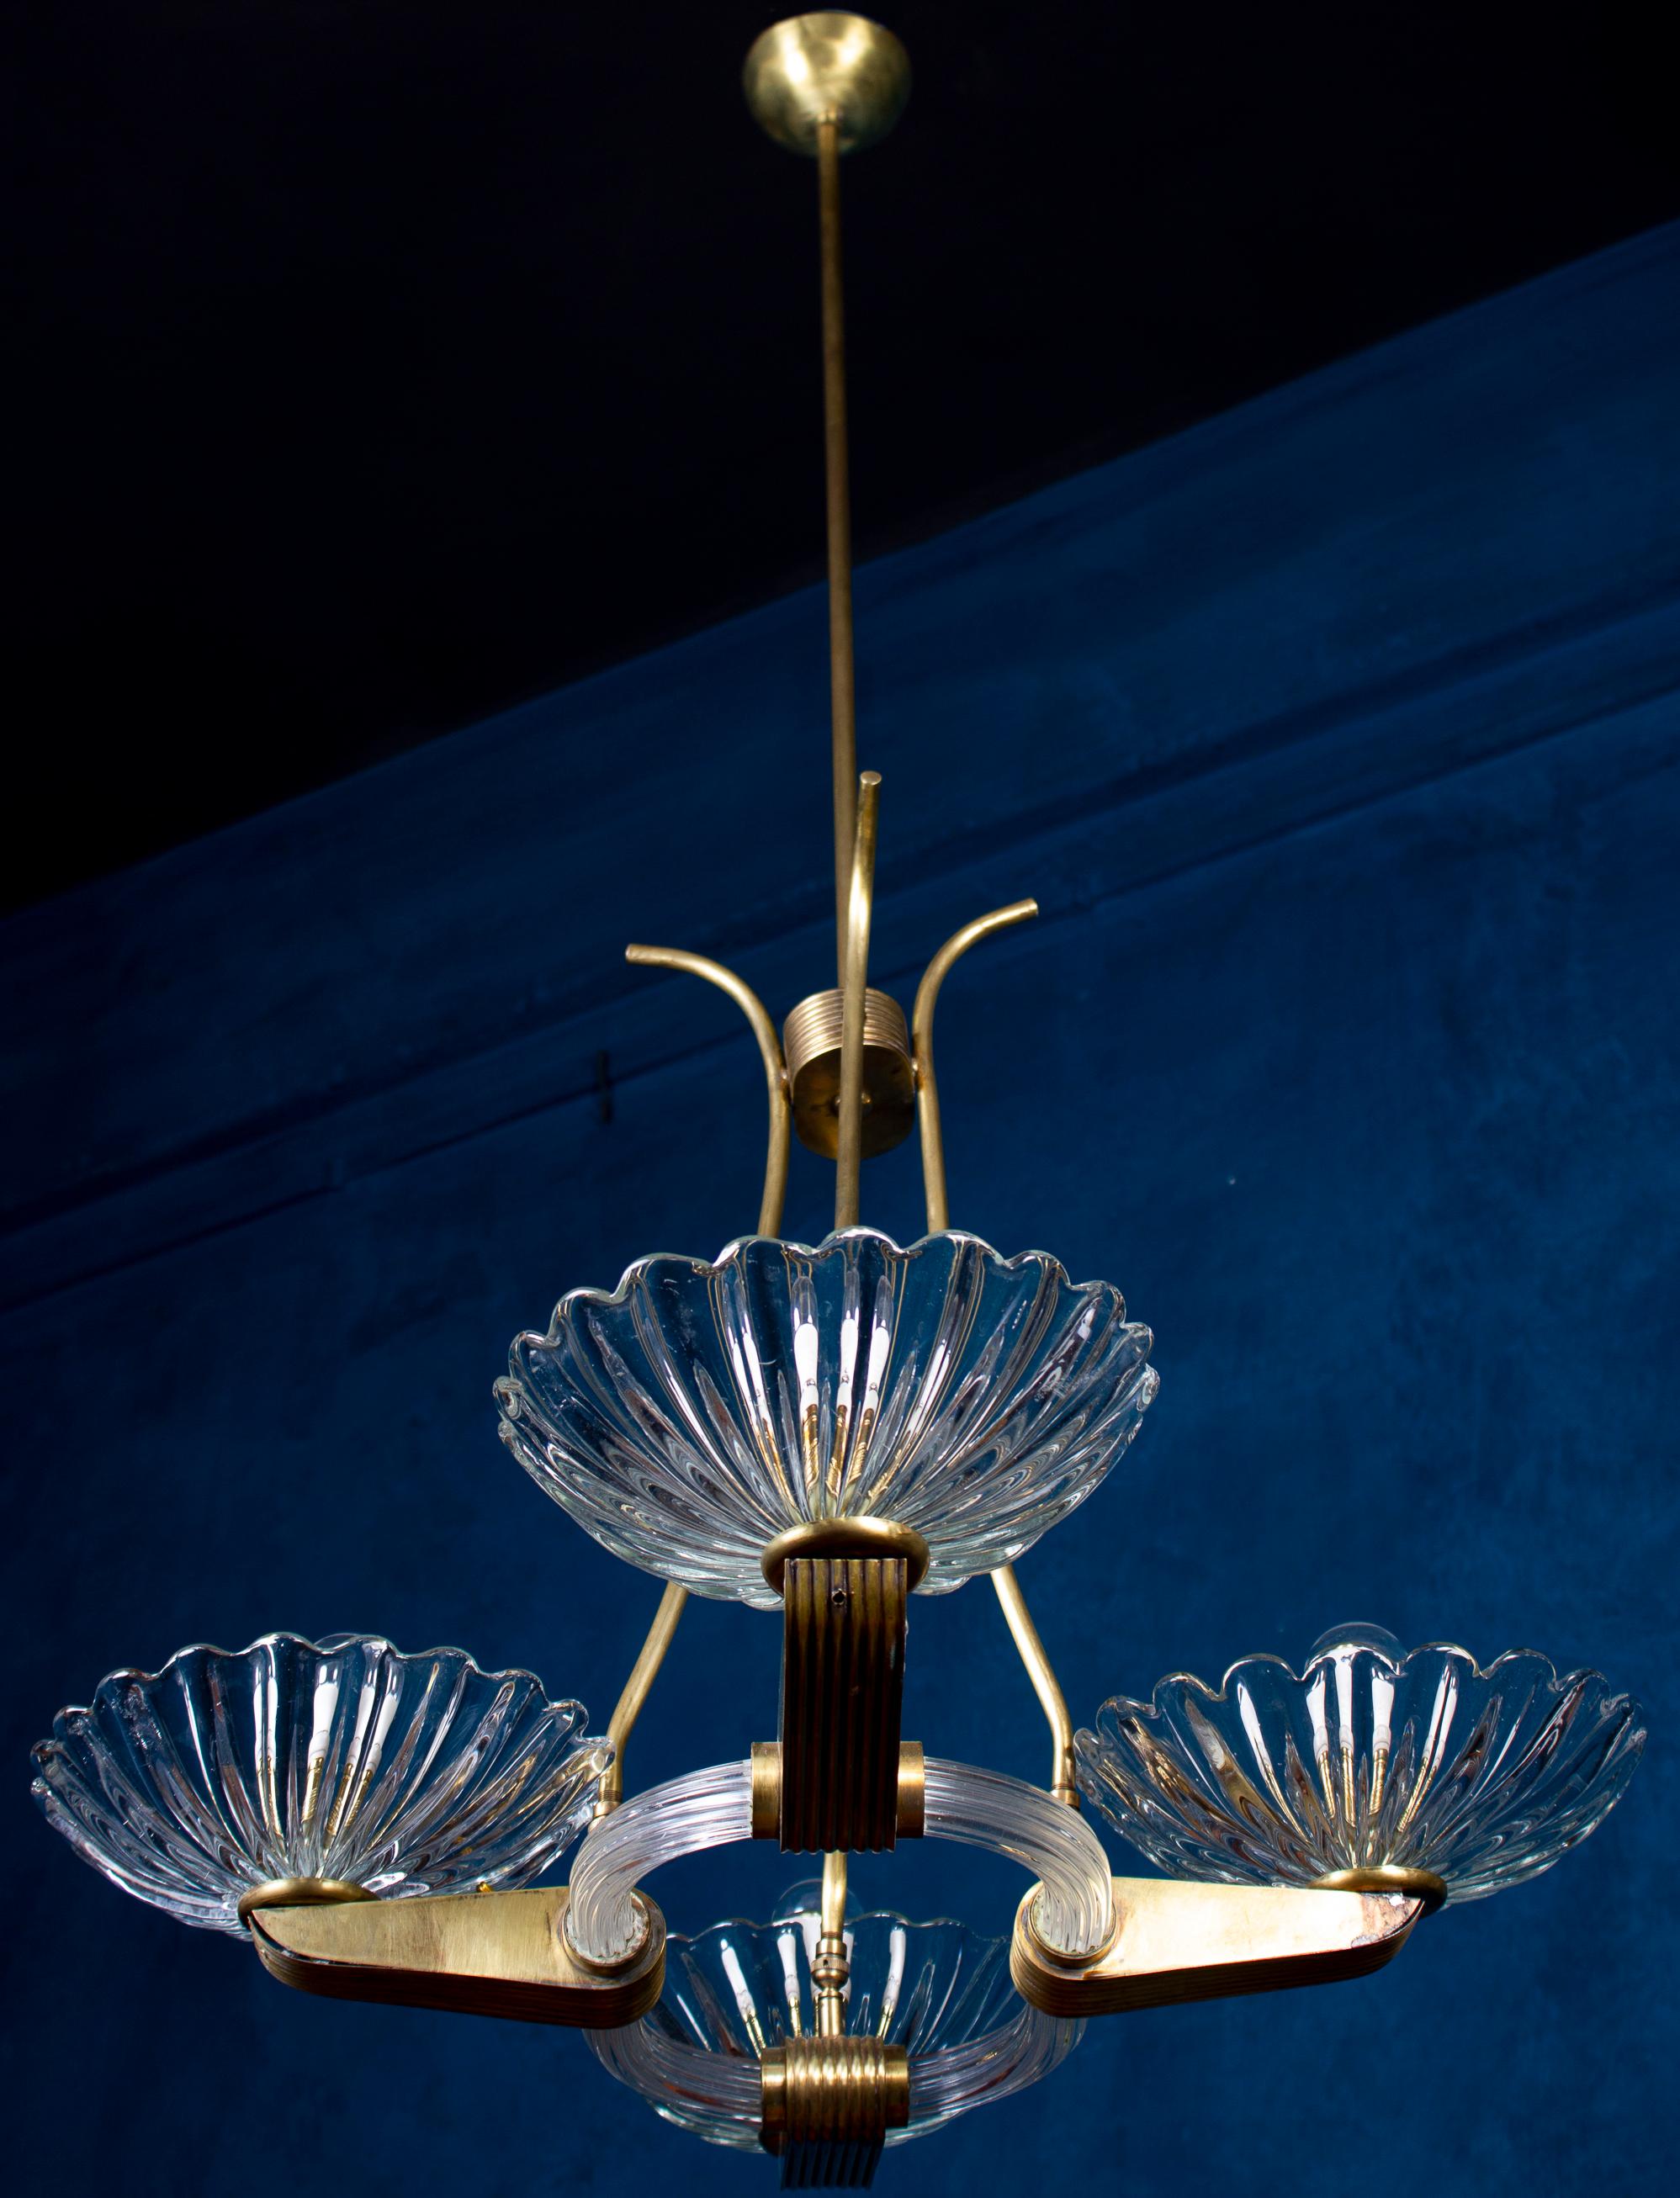 Erstaunlicher Kronleuchter aus Murano-Glas mit 4 Schirmen und eleganter Messingfassung von Barovier.
Ausgezeichneter Vintage-Zustand
Vier E 27-Glühbirnen, die mit den US-Normen kompatibel sind.
 Die Höhe der Messingstange kann gekürzt werden.